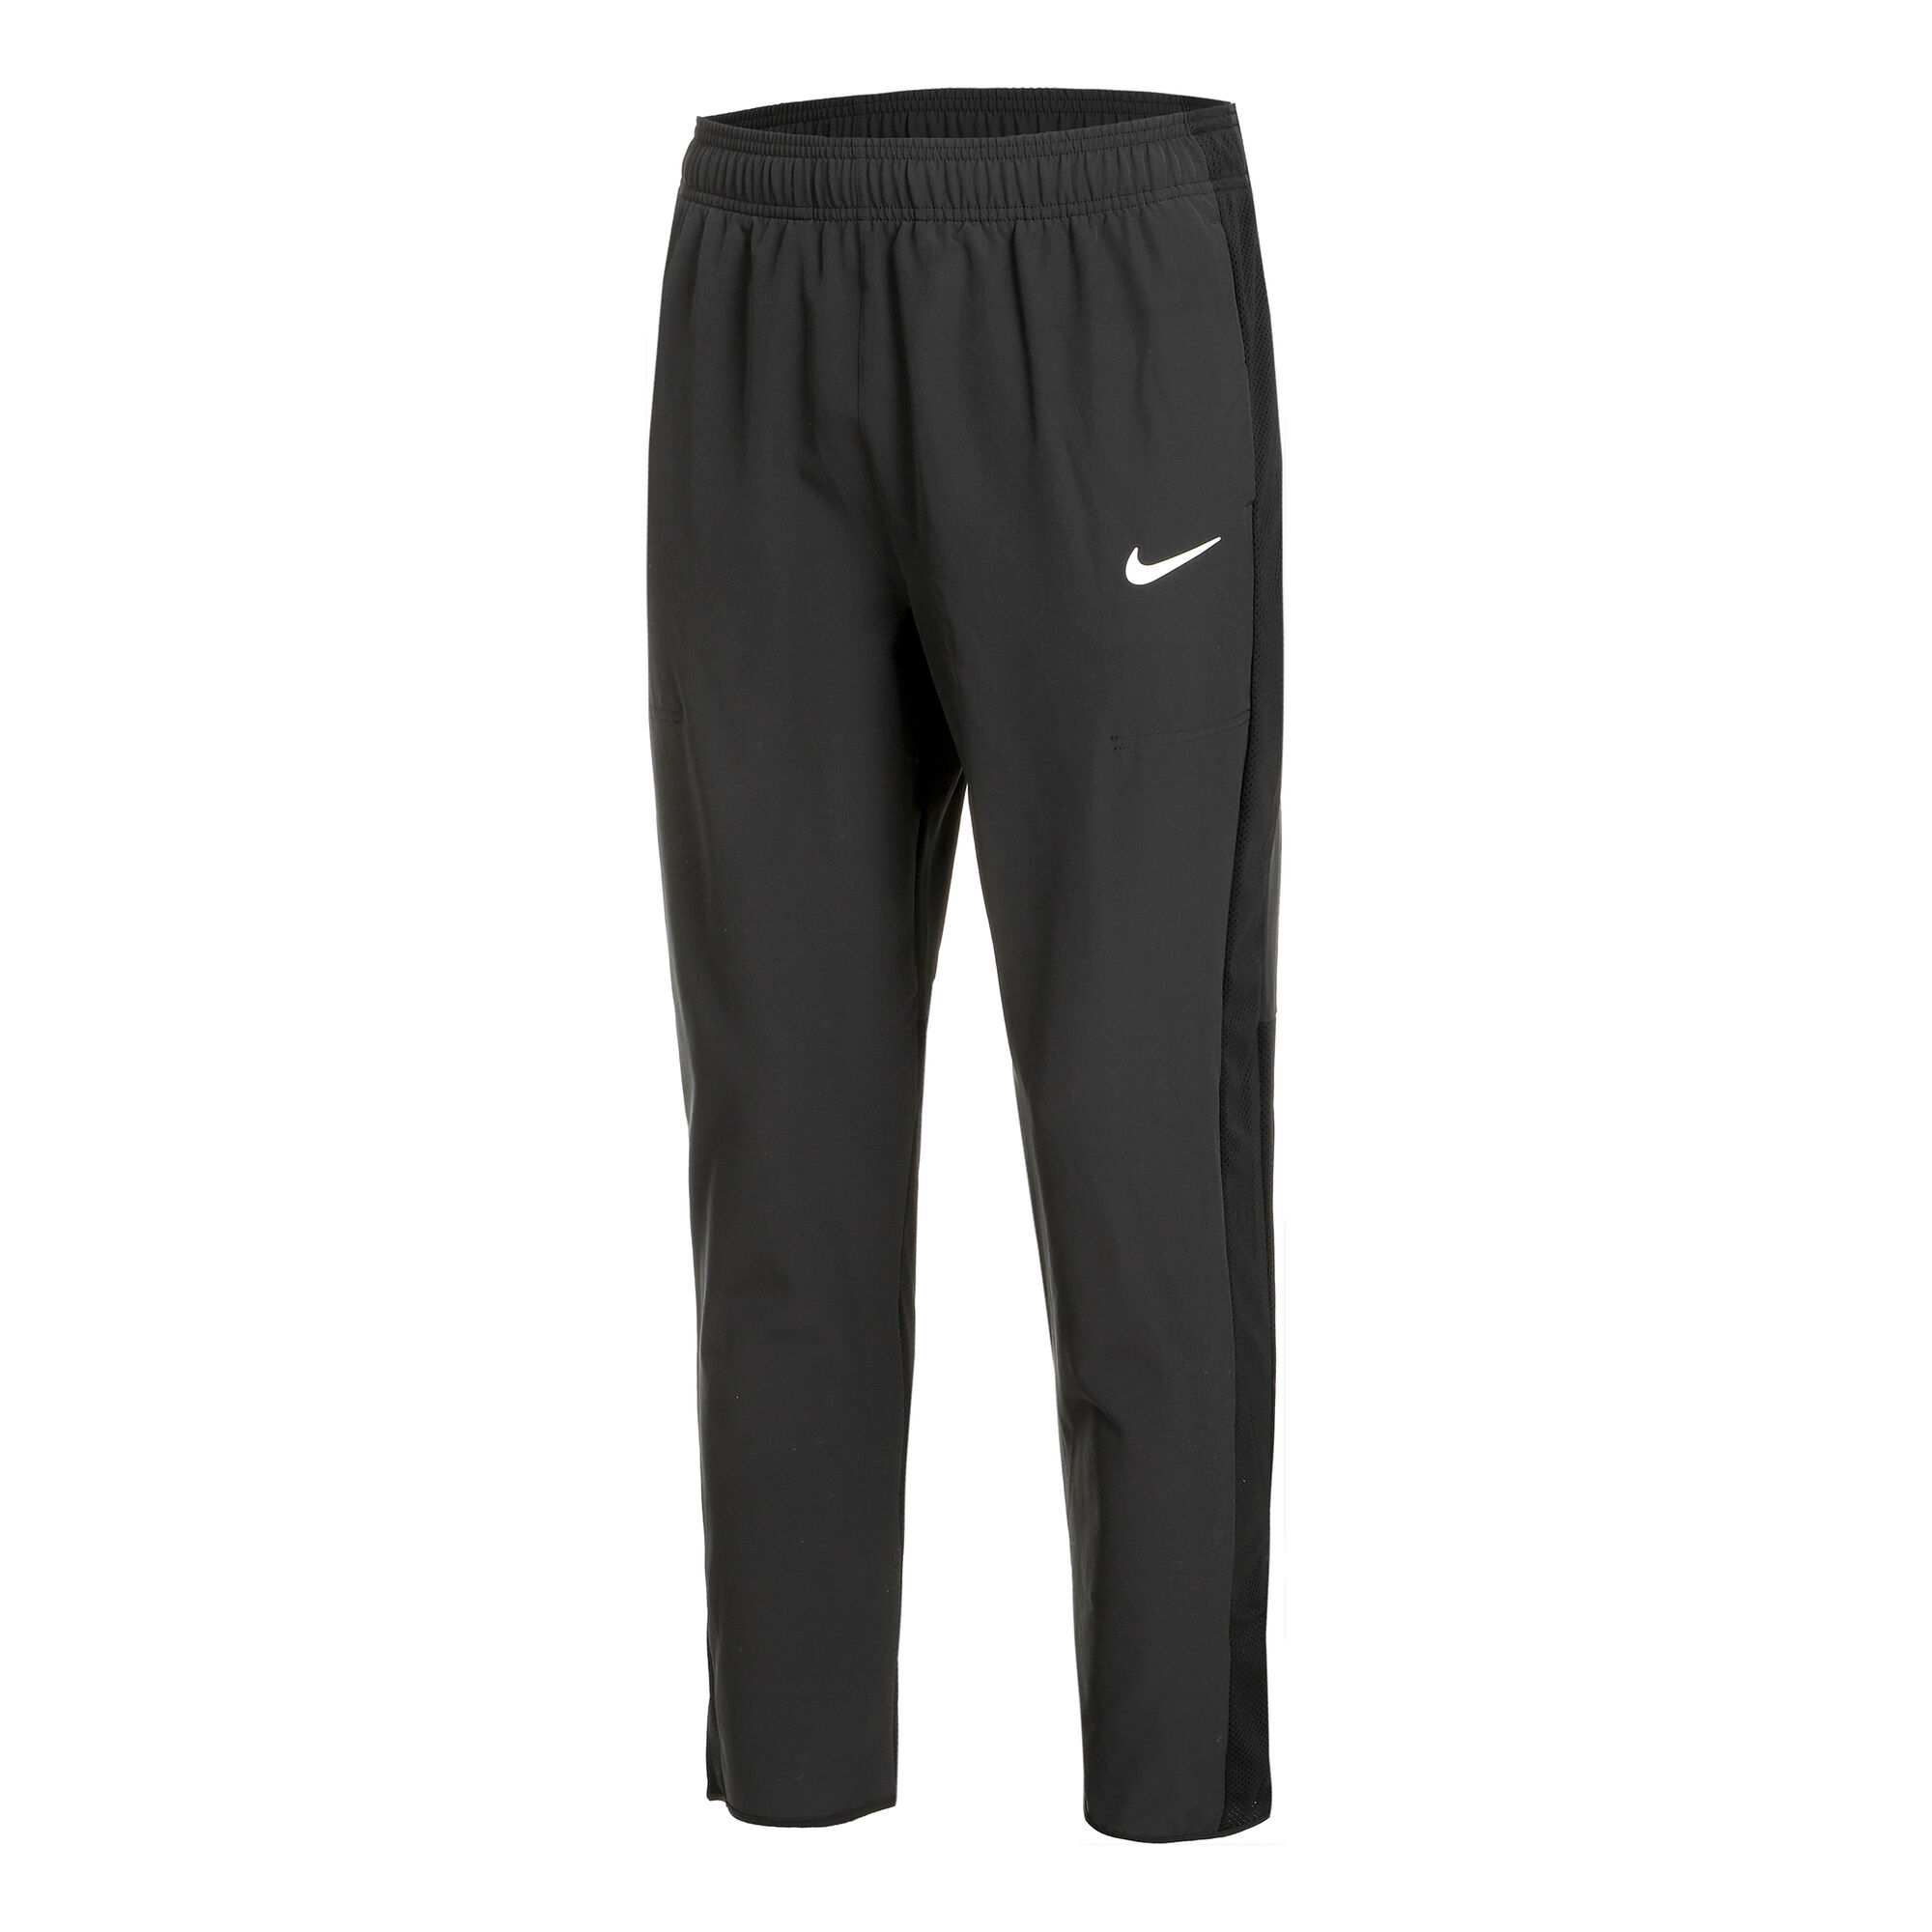 Nike Advantage Herrer - Blå køb | Tennis-Point